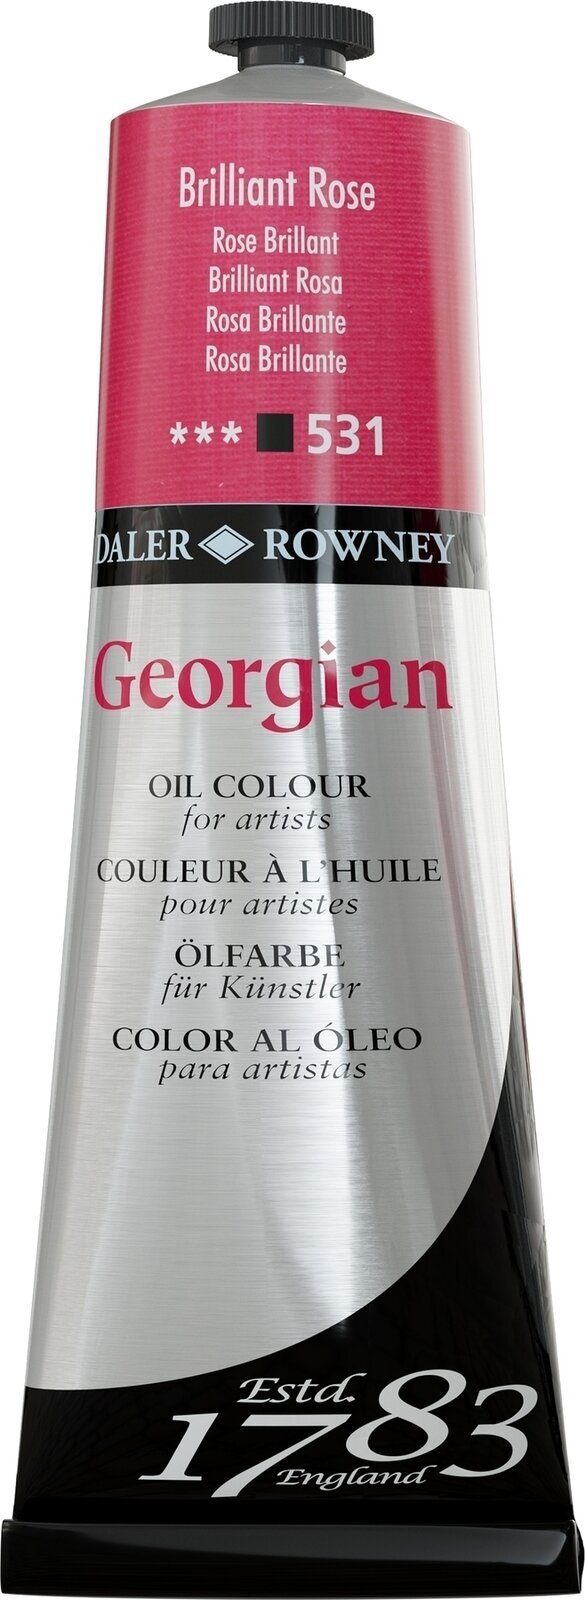 Χρώμα λαδιού Daler Rowney Georgian Λαδομπογιά Brilliant Rose 225 ml 1 τεμ.